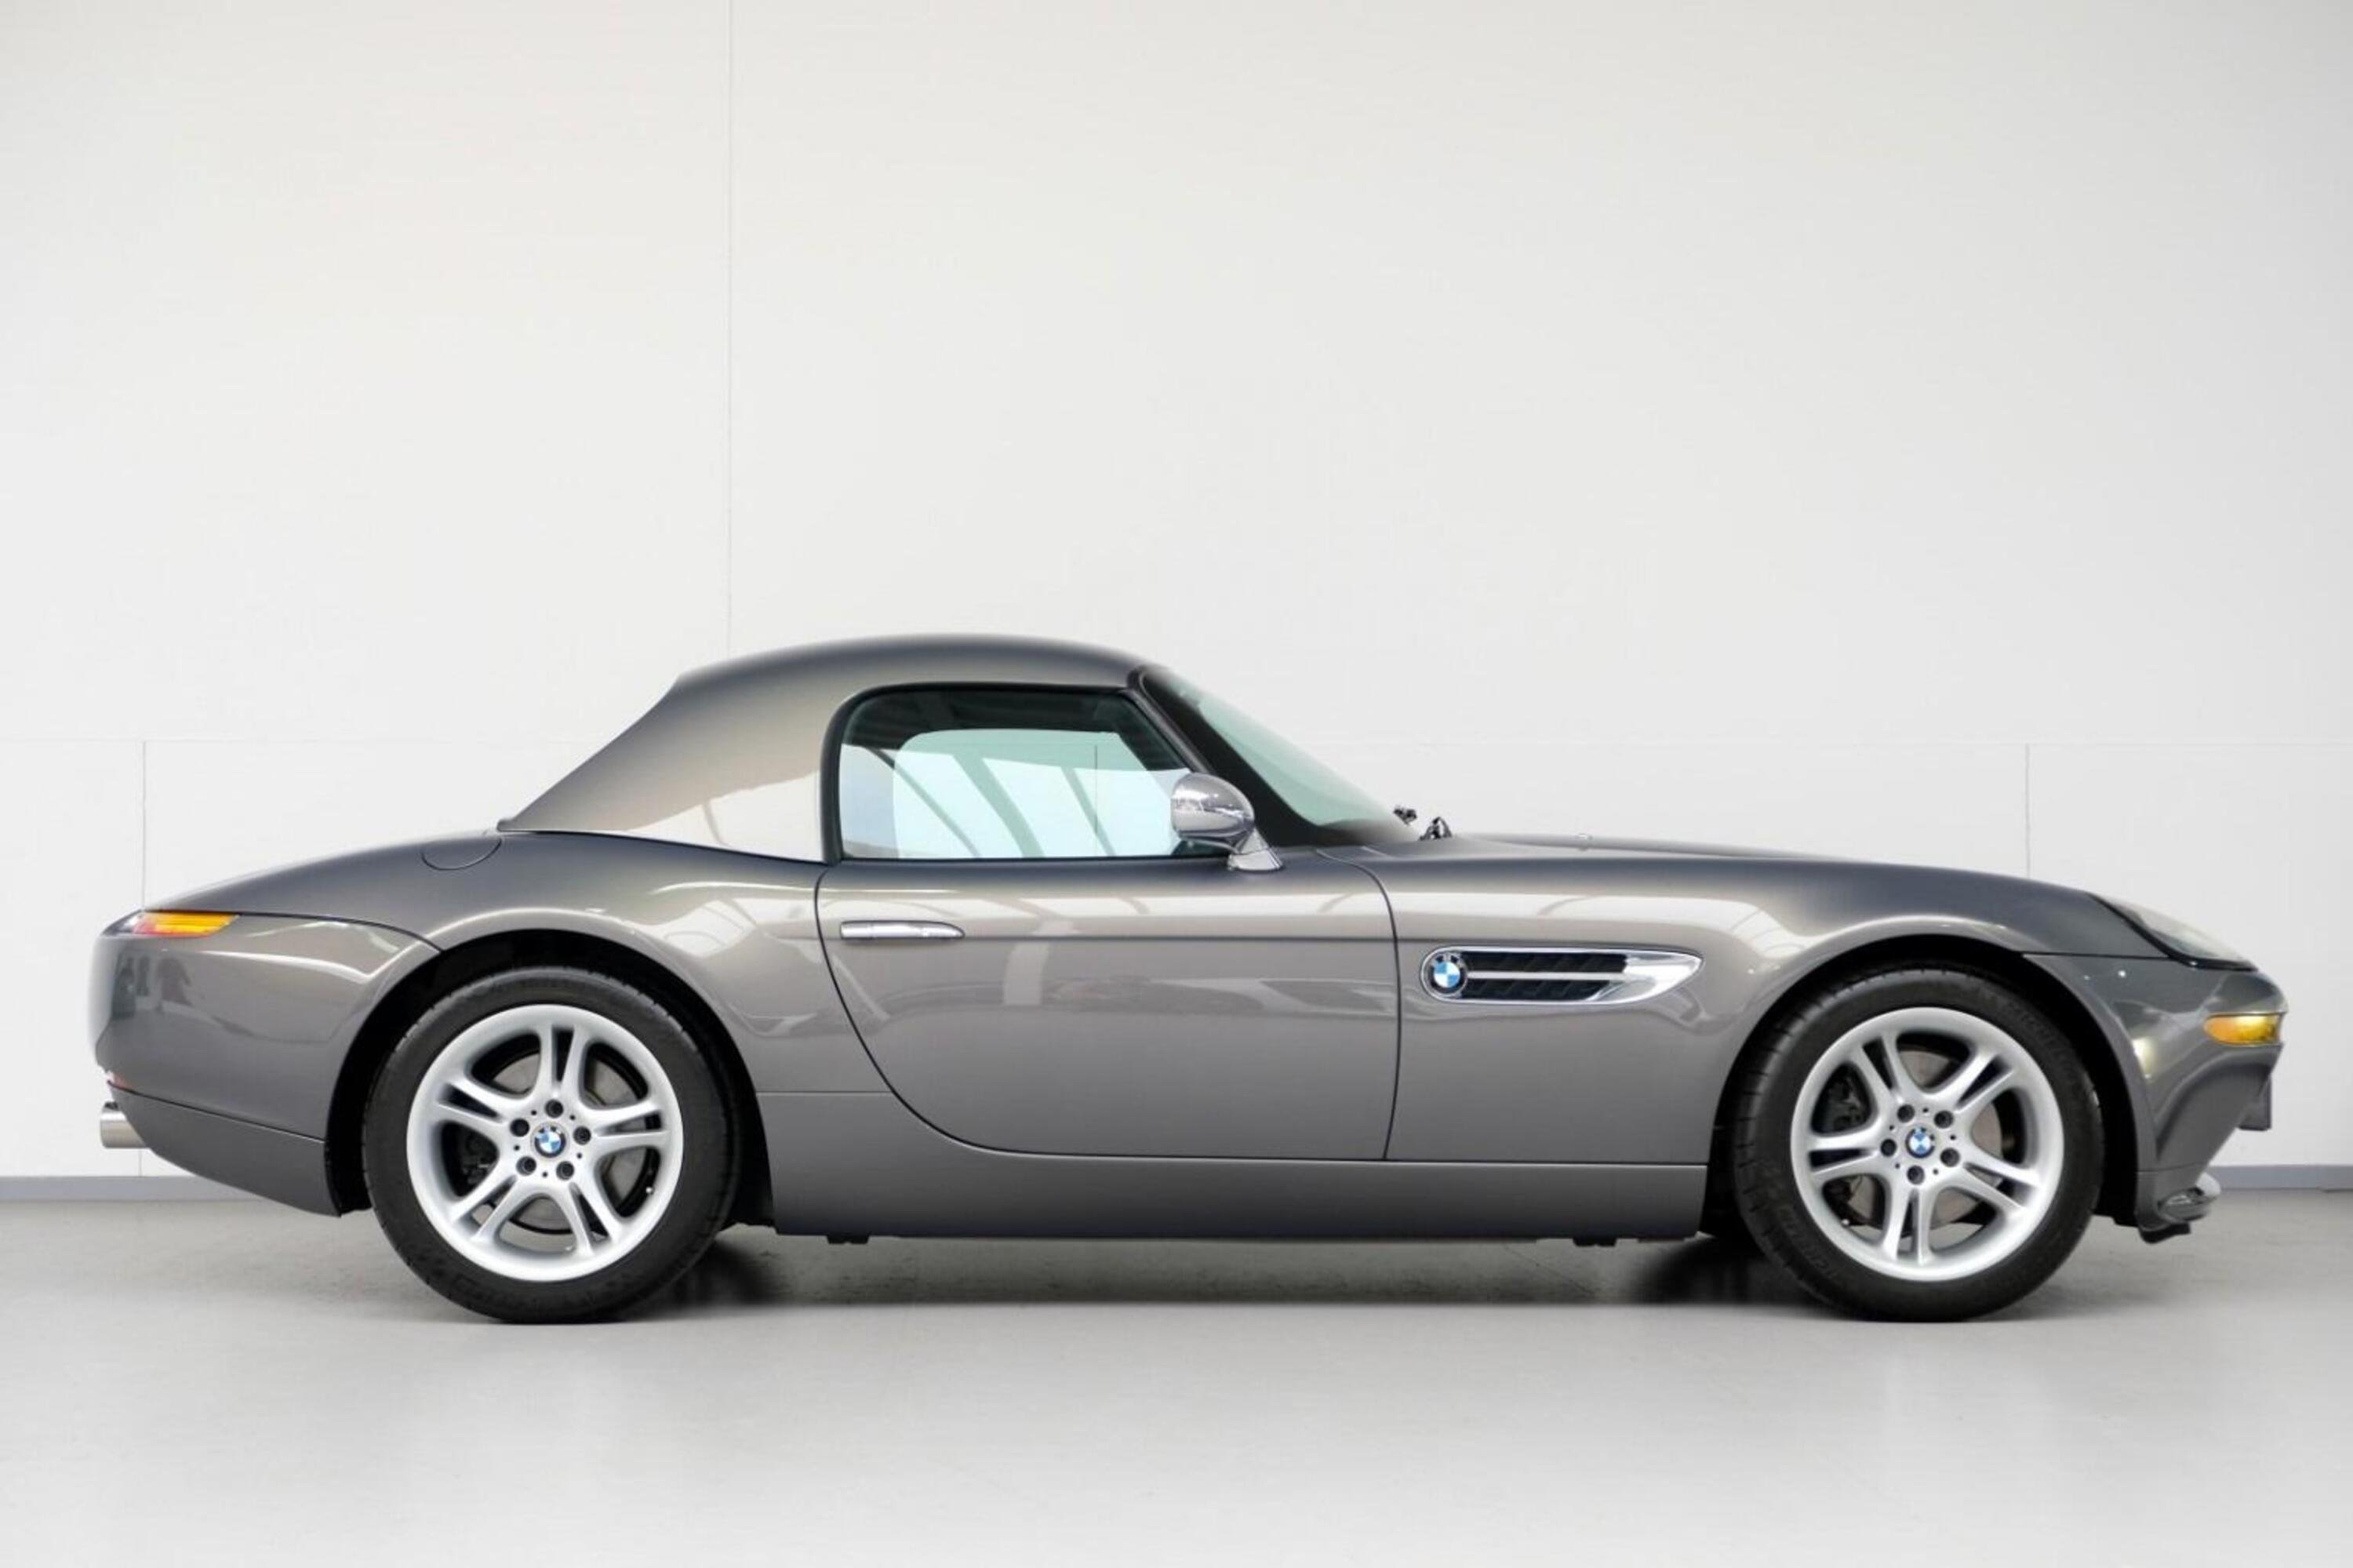 In vendita: BMW Z8 Roadster (5.0L V8) del 2002 a 300.000&euro;